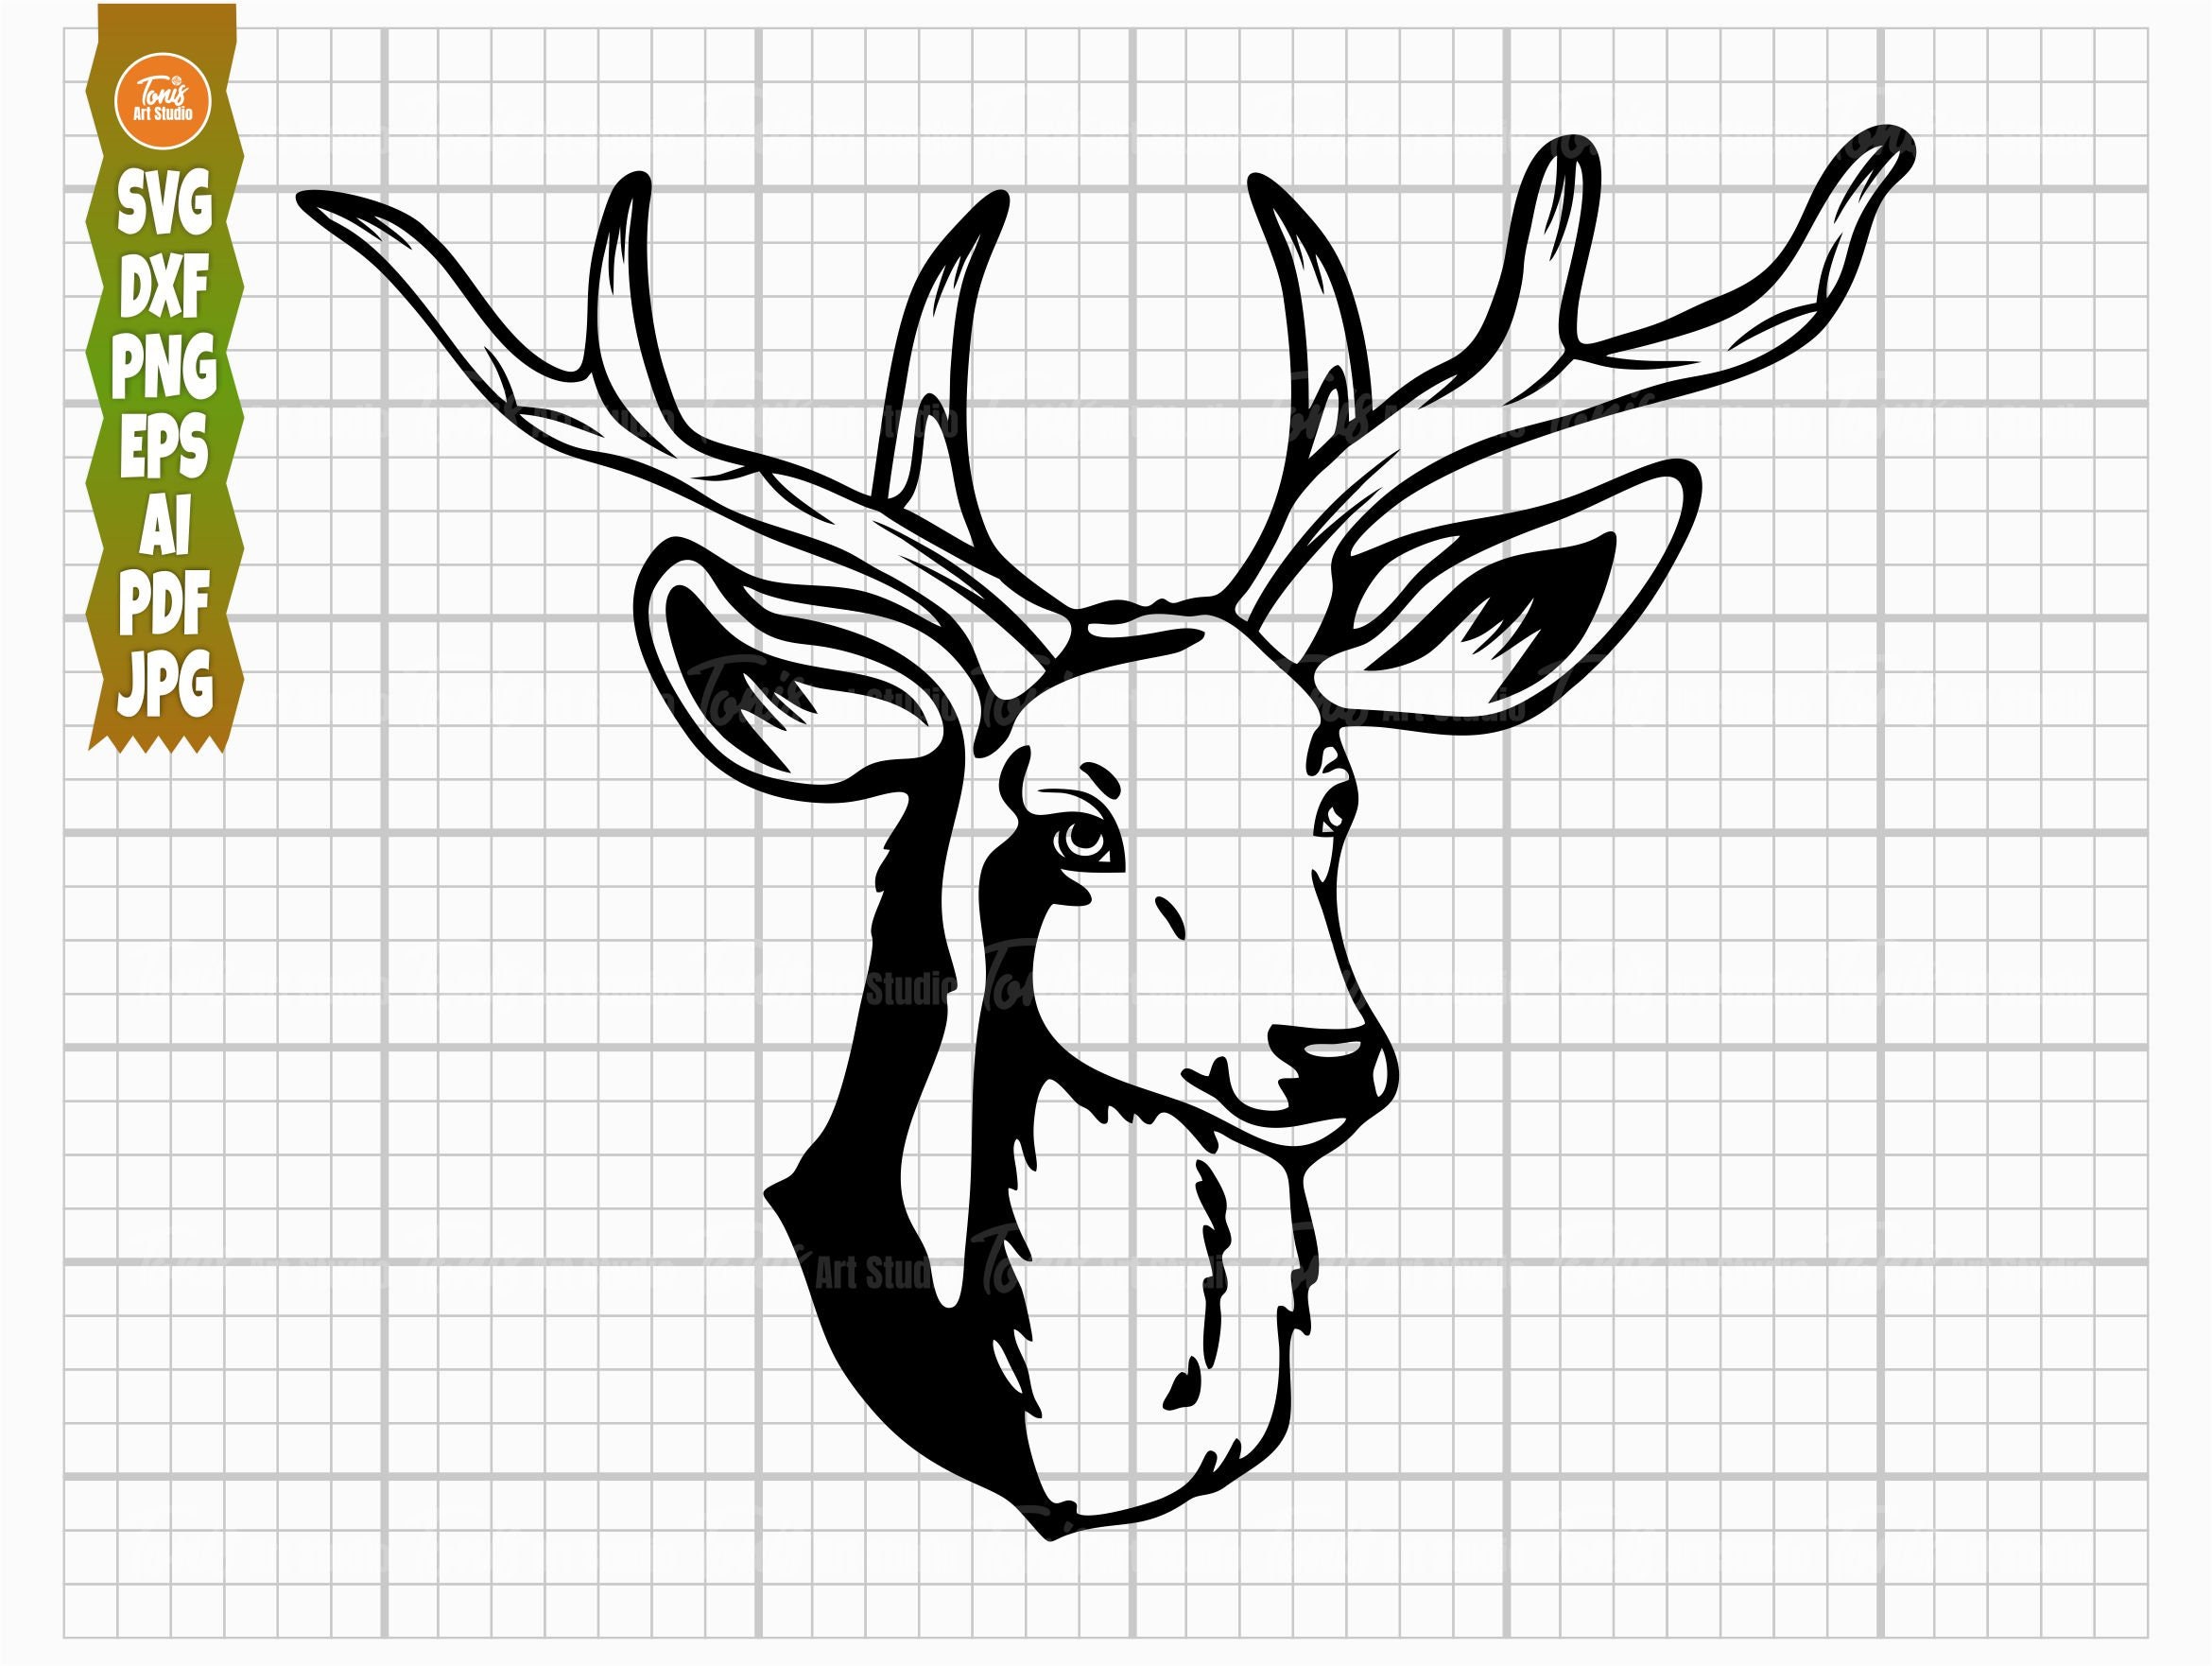 deer head png